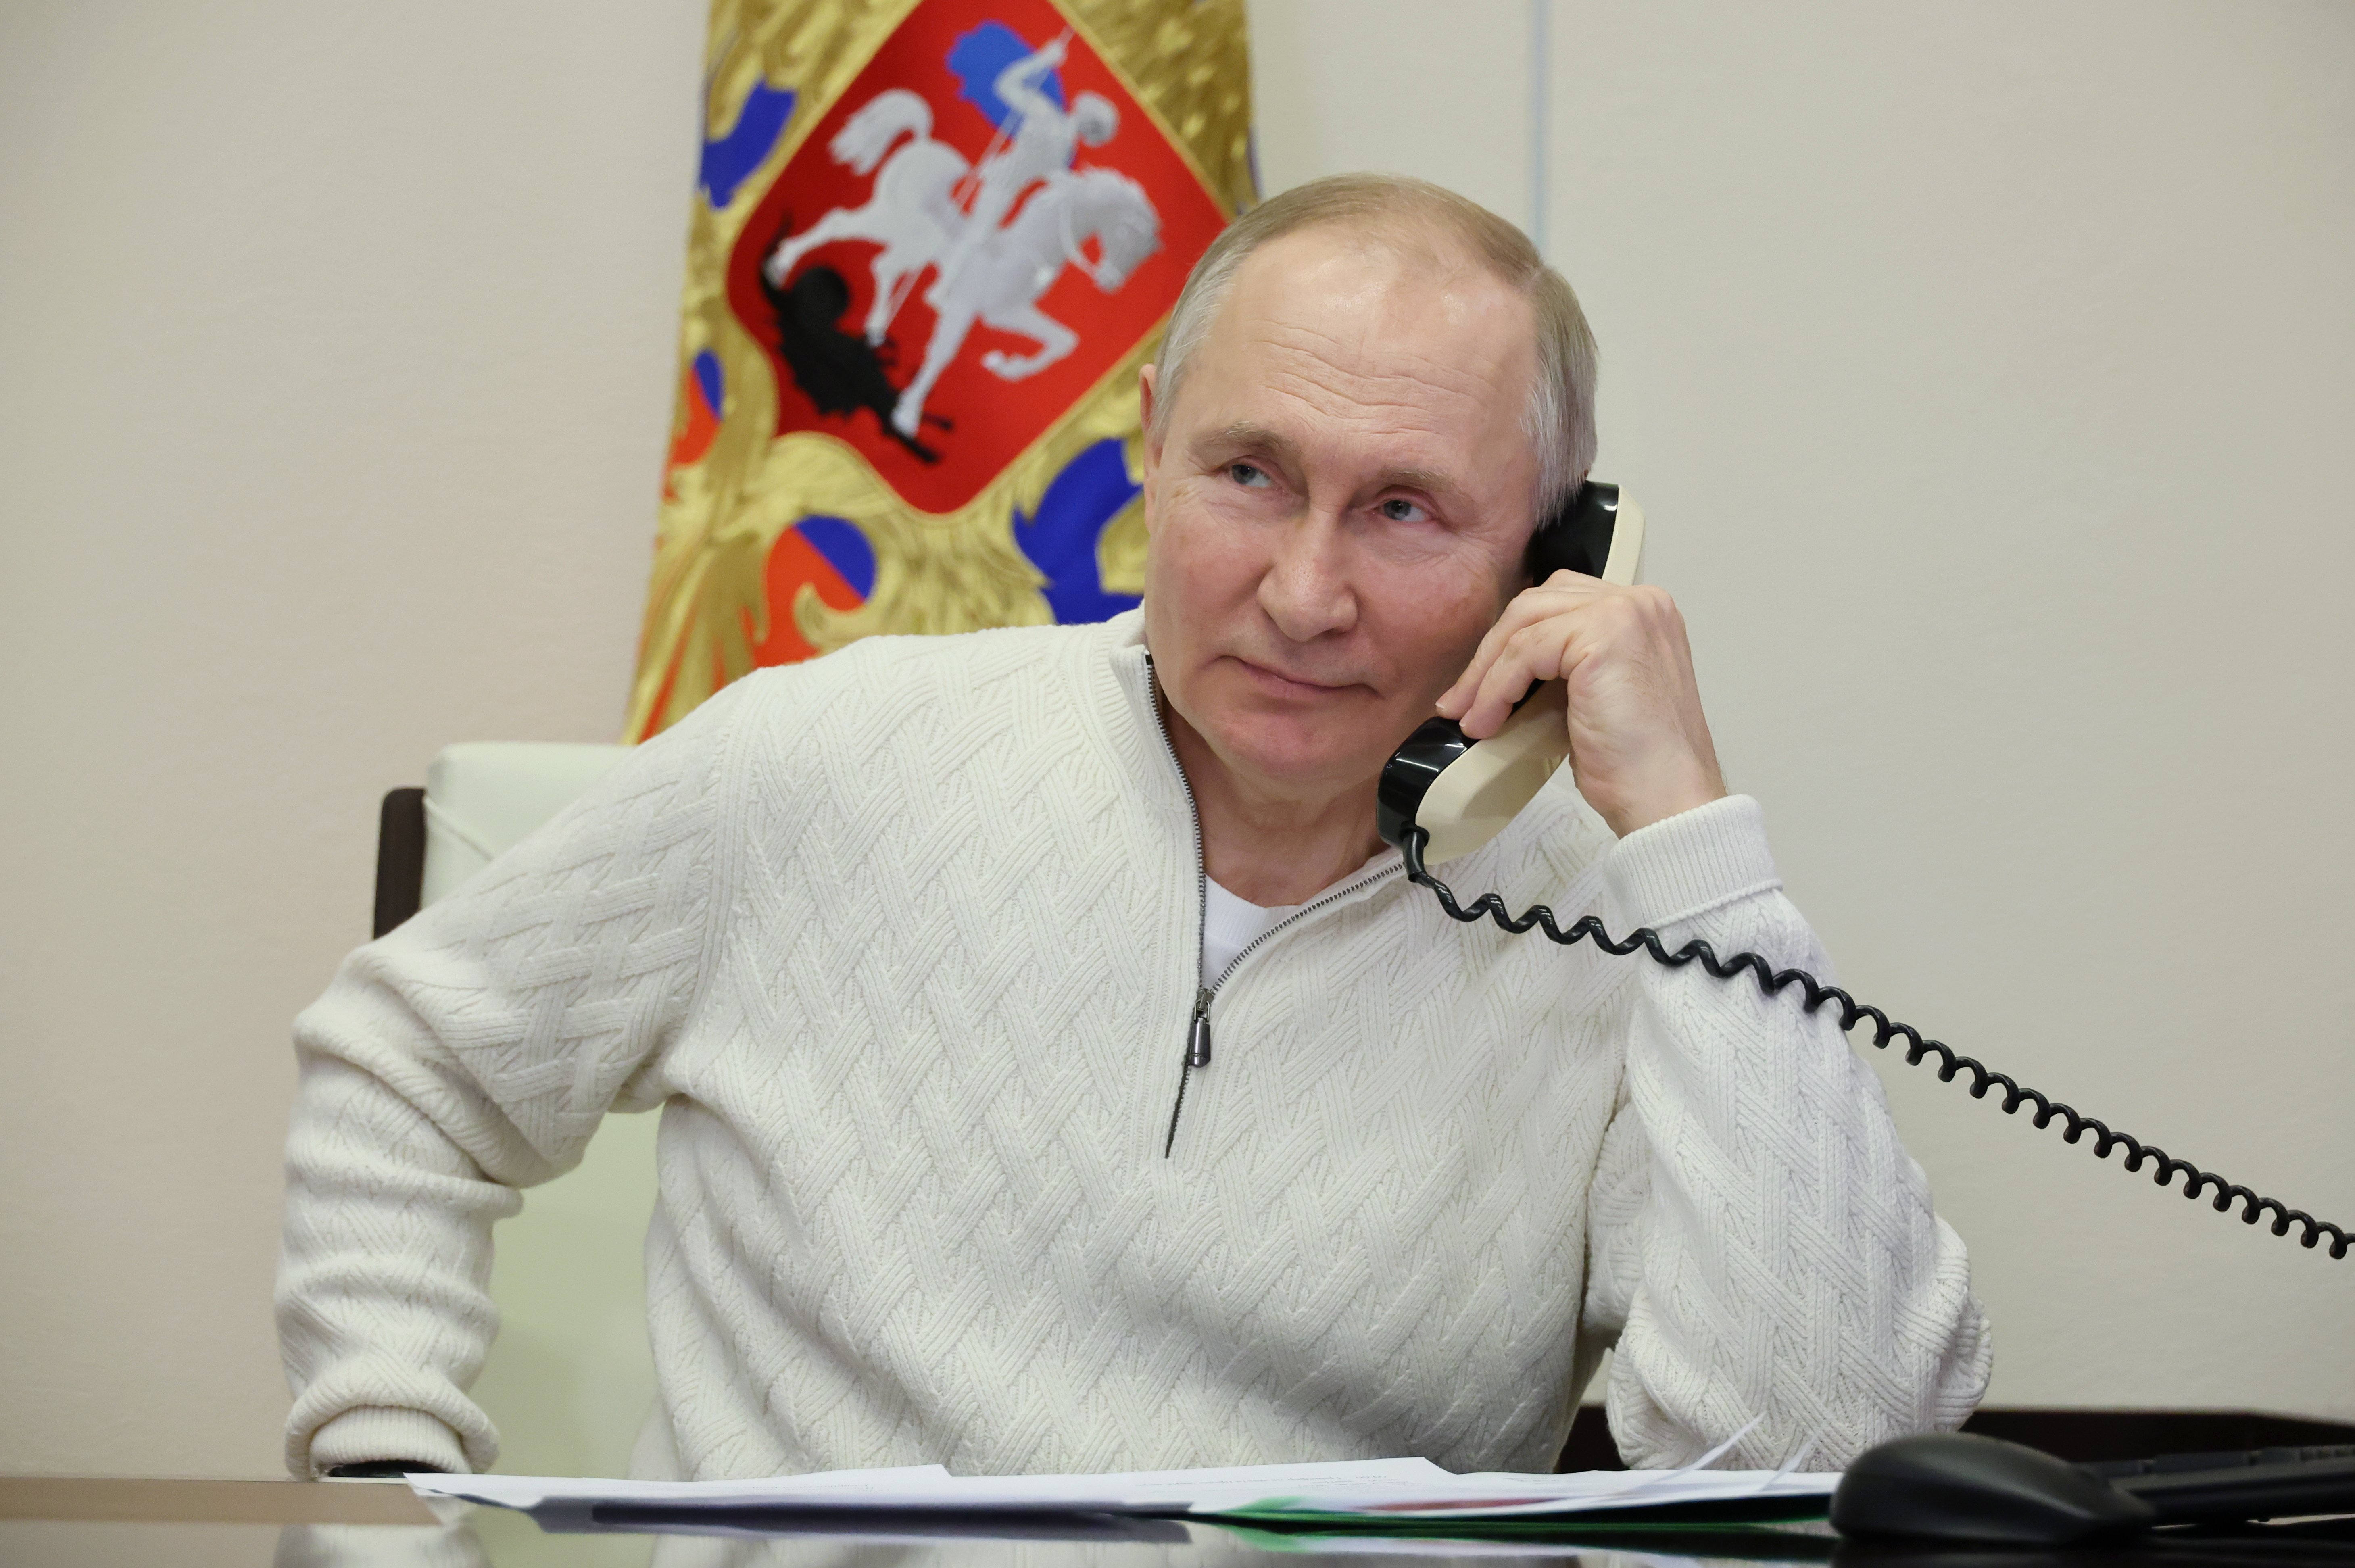 Revelen per què Vladímir Putin va esbroncar un ministre en directe